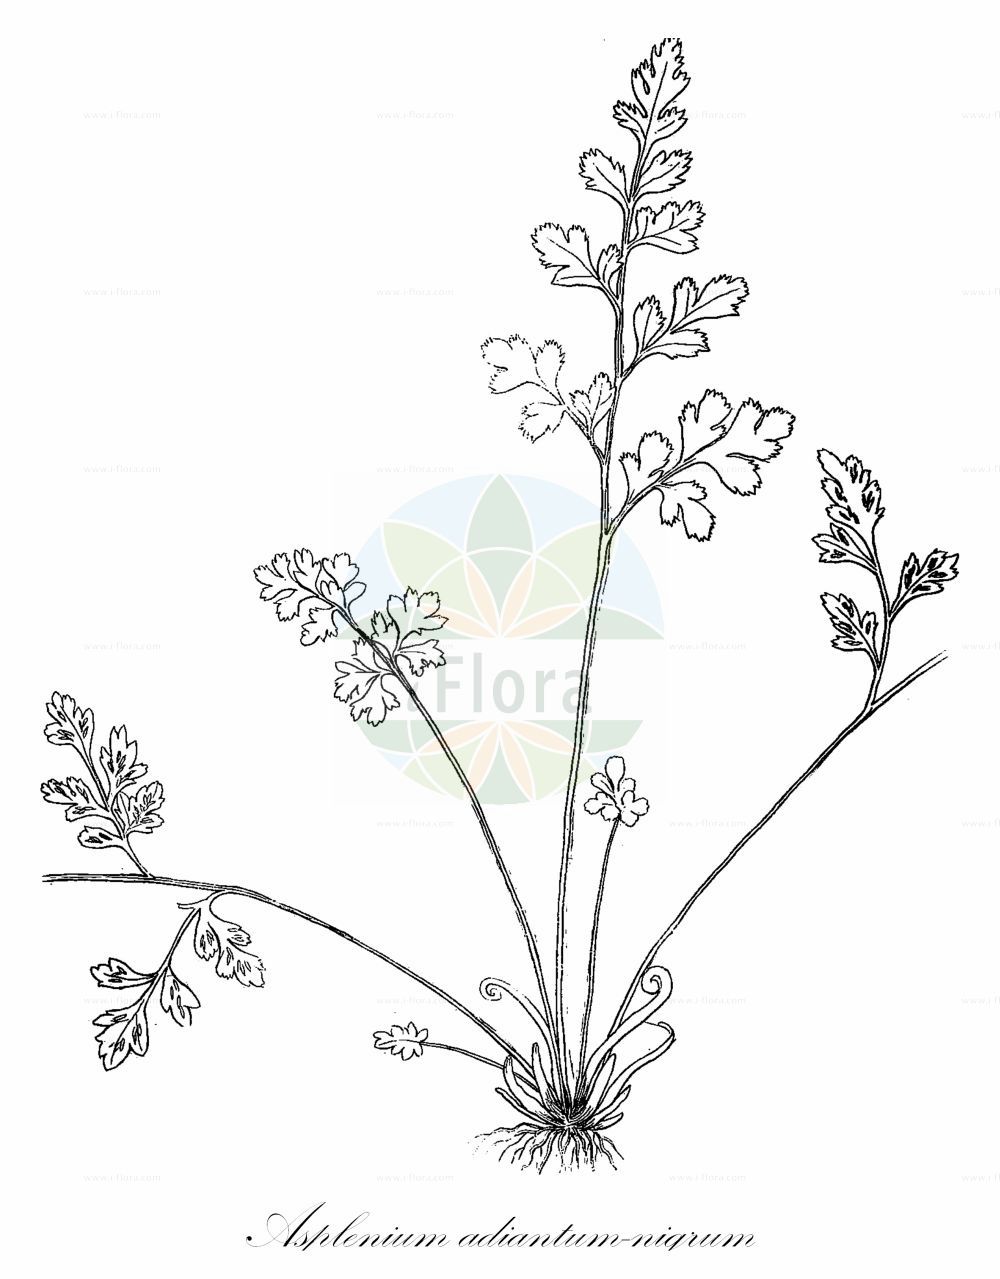 Historische Abbildung von Asplenium adiantum-nigrum subsp. serpentini (Serpentin-Streifenfarn - Serpentine Spleenwort). Das Bild zeigt Blatt, Bluete, Frucht und Same. ---- Historical Drawing of Asplenium adiantum-nigrum subsp. serpentini (Serpentin-Streifenfarn - Serpentine Spleenwort). The image is showing leaf, flower, fruit and seed.(Asplenium adiantum-nigrum subsp. serpentini,Serpentin-Streifenfarn,Serpentine Spleenwort,Asplenium serpentini,Serpentin-Streifenfarn,Keilblaettriger Streifenfarn,Serpentine Spleenwort,Asplenium,Streifenfarn,Spleenwort,Aspleniaceae,Streifenfarngewächse,Spleenworts,Blatt,Bluete,Frucht,Same,leaf,flower,fruit,seed,Viviani (1808))